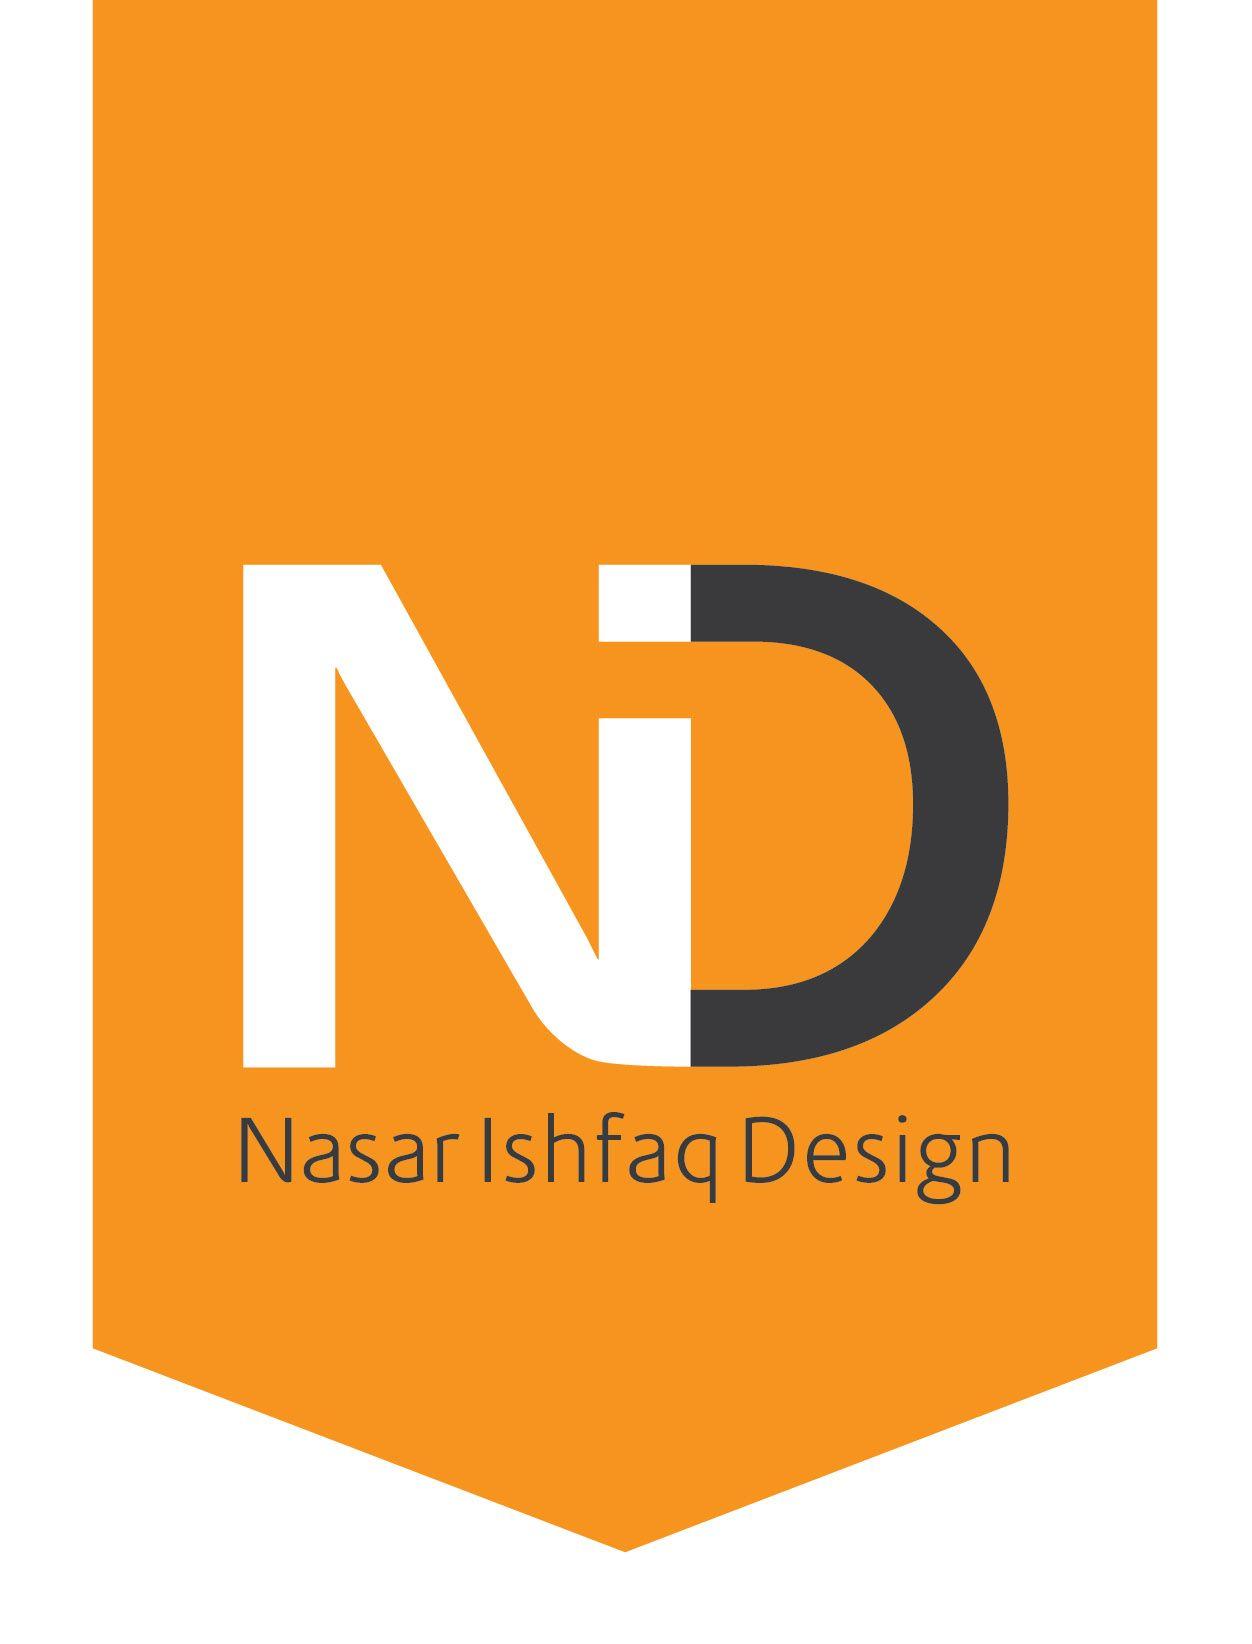 Nid Logo - Nasar Ishfaq